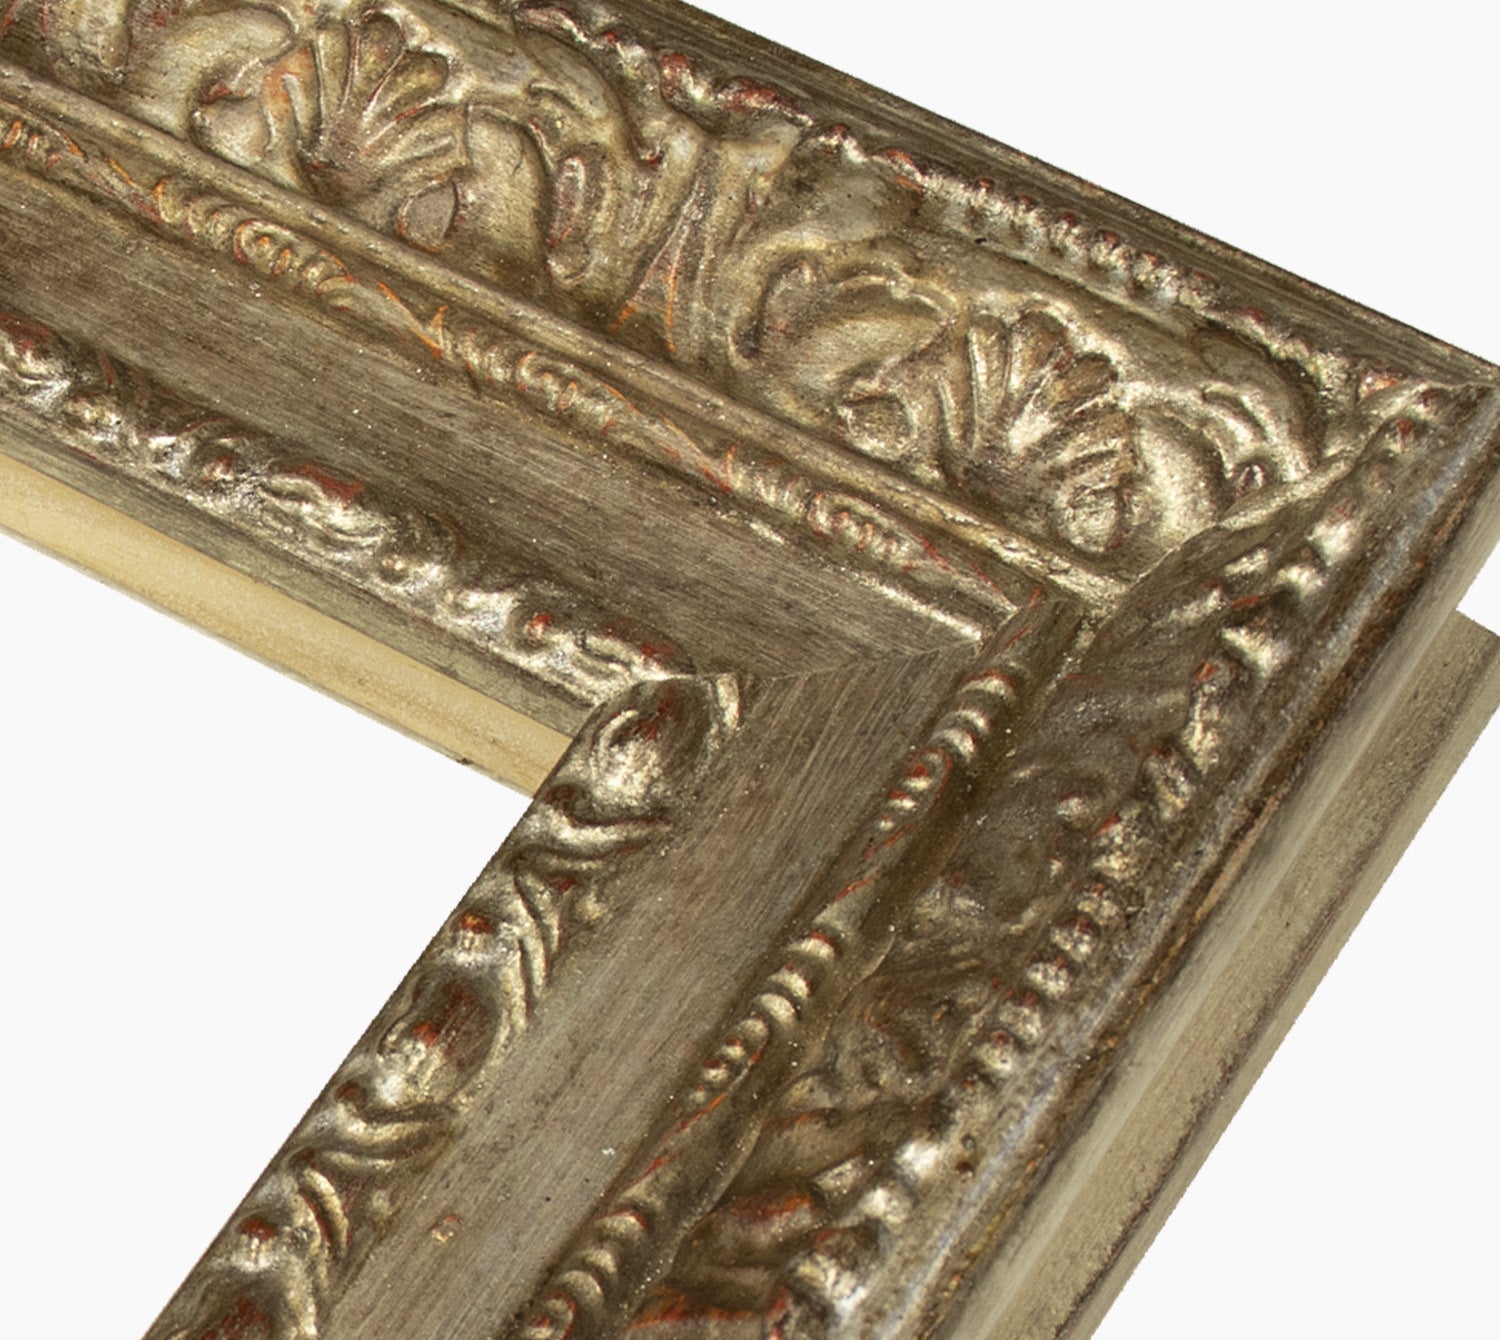 643.231 cadre en bois à la feuille d'argent antique mesure de profil 65x55 mm Lombarda cornici S.n.c.